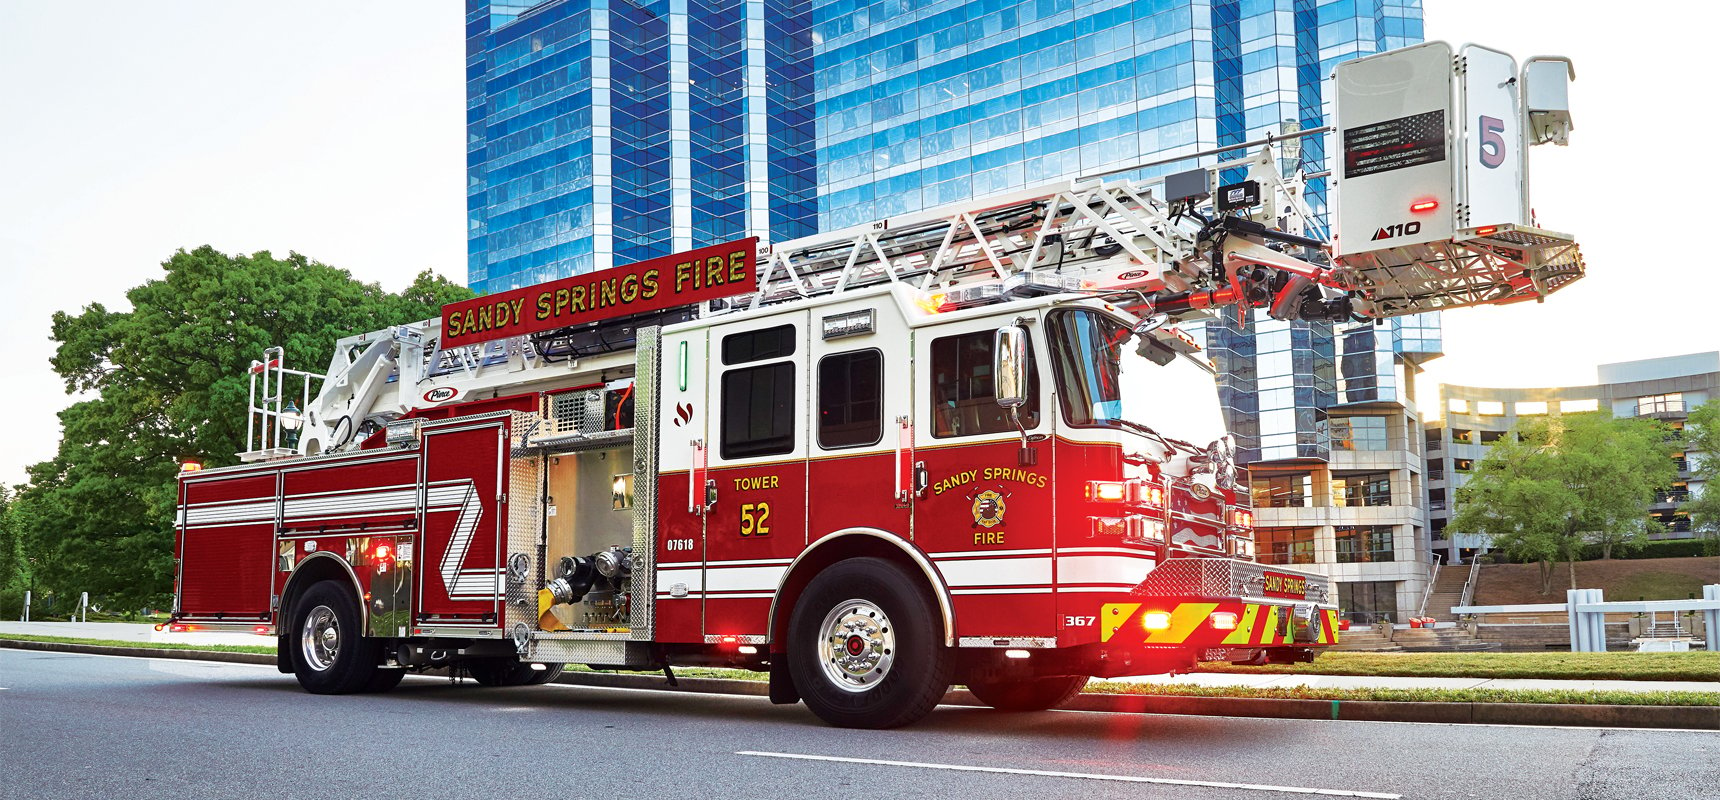 Banner pierce quint fire truck image.jpg?width=1720&name=Banner pierce quint fire truck image